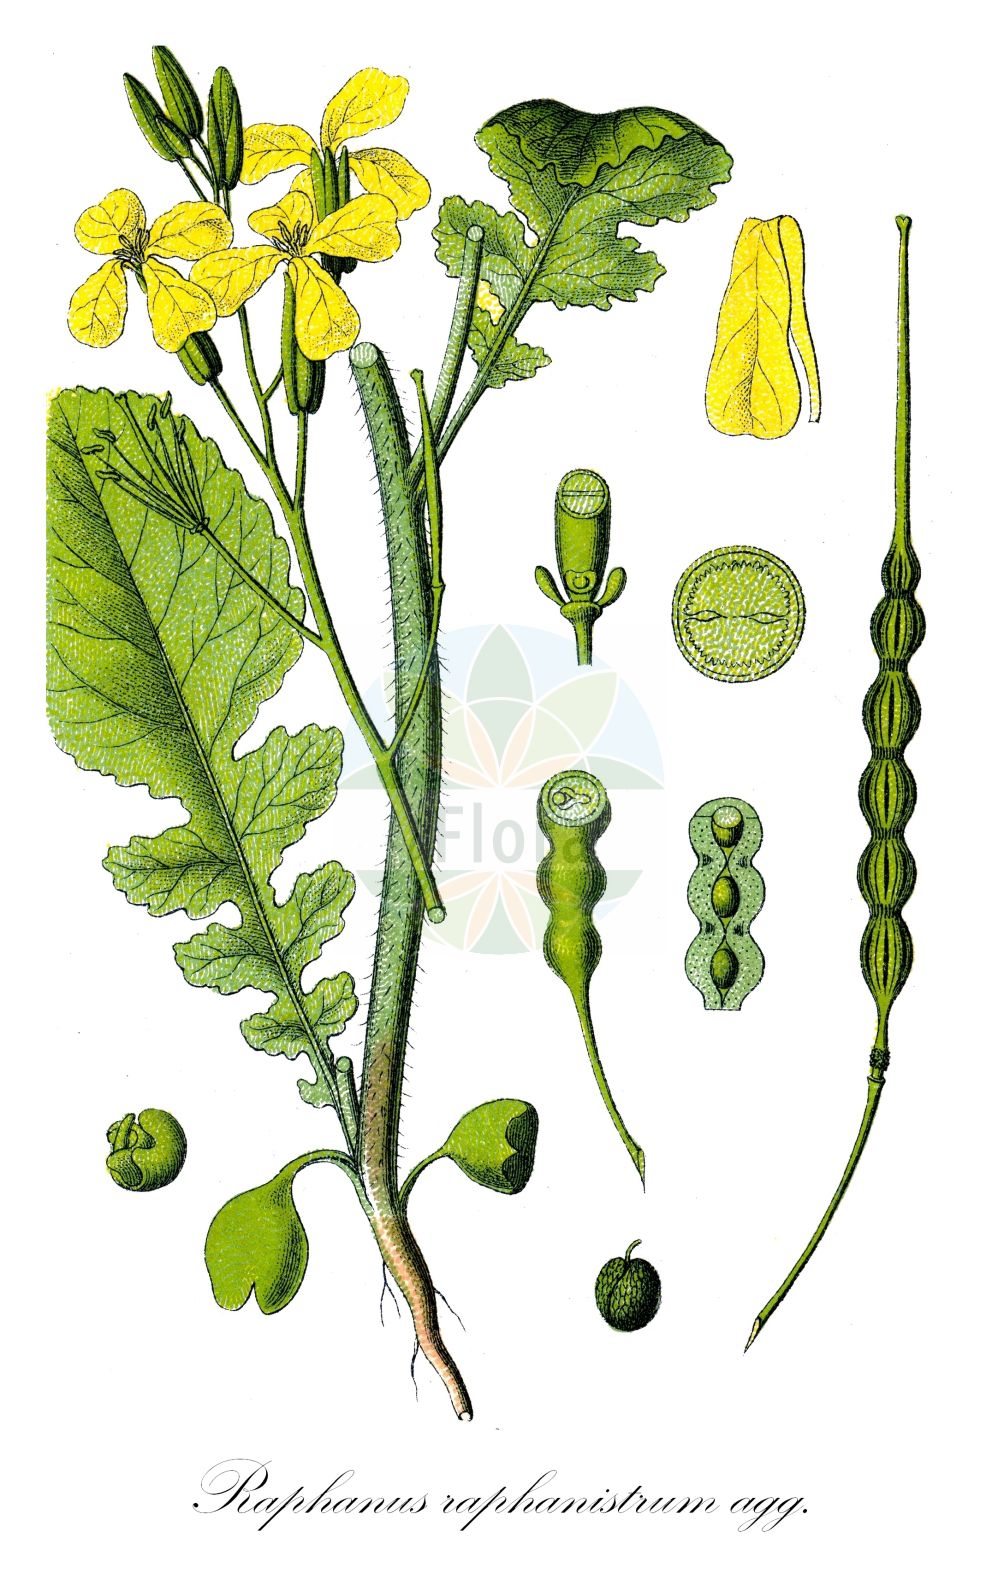 Historische Abbildung von Raphanus raphanistrum agg. (Acker-Rettich - Jointed Charlock). ---- Historical Drawing of Raphanus raphanistrum agg. (Acker-Rettich - Jointed Charlock).(Raphanus raphanistrum agg.,Acker-Rettich,Jointed Charlock,Acker-Rettich,Jointed Charlock,Runch,Wild Radish,Raphanus,Hederich,Radish,Brassicaceae,Kreuzblütler,Cabbage family,Sturm (1796f))